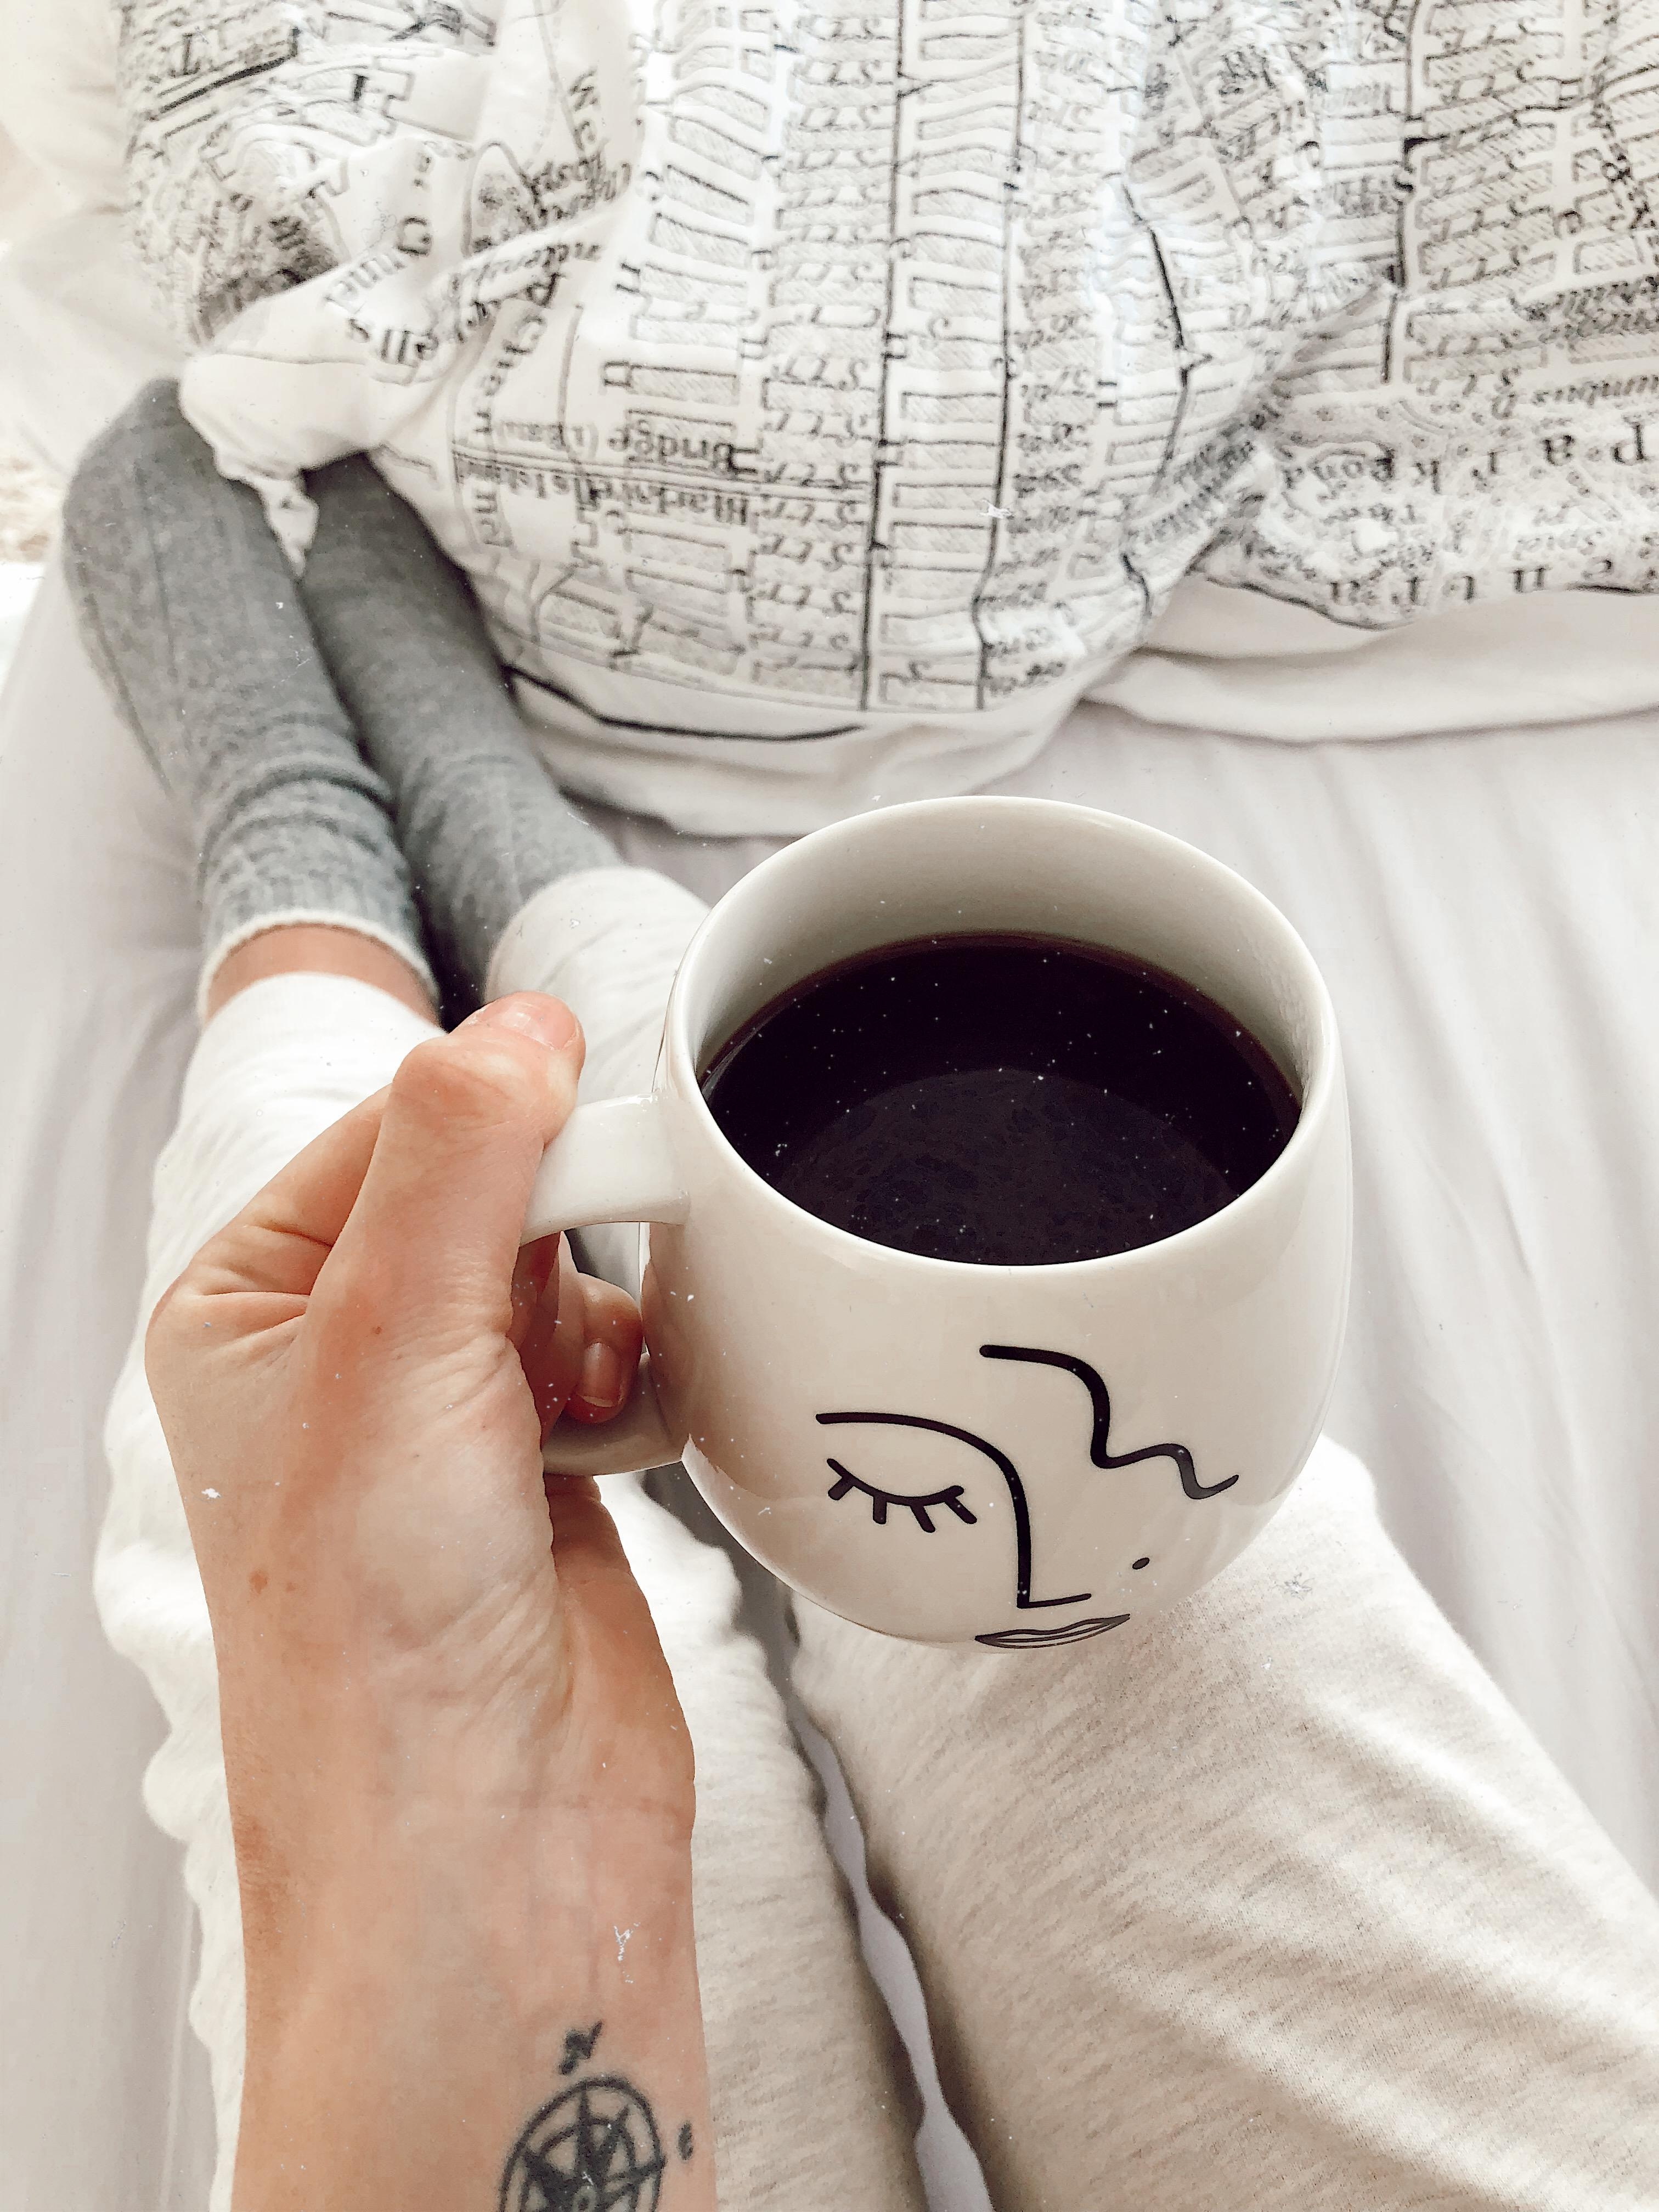 Cozy Weekend in bed! Ich vermisse warme Sommertage, wer noch? #tagträumer #cozy #kaffee #wochenende #frühstückimbett